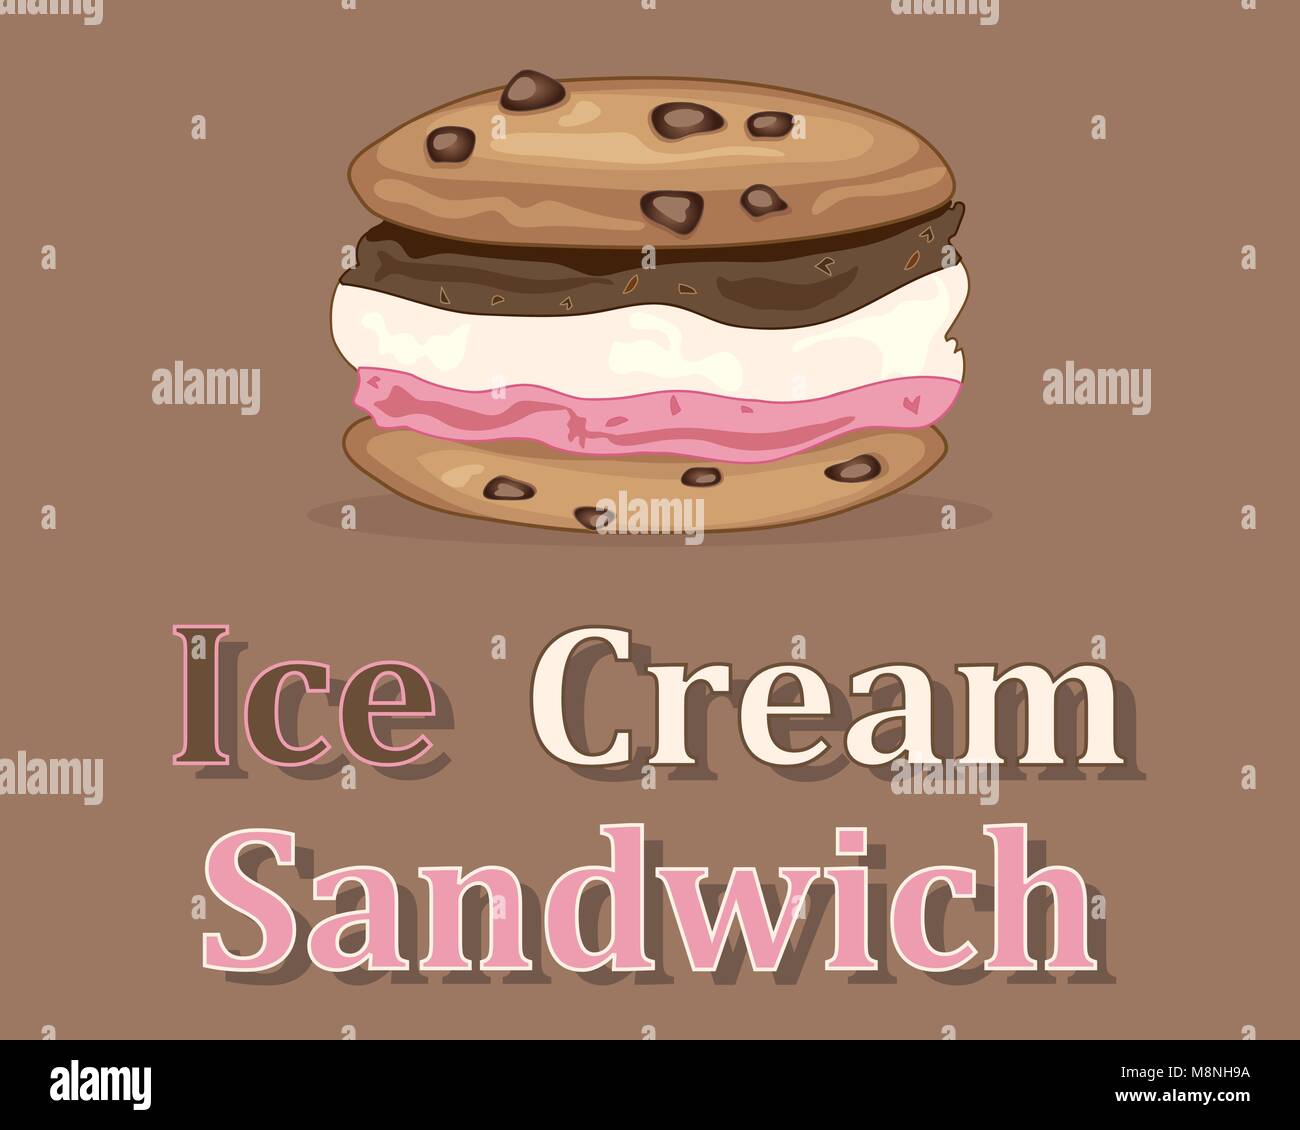 Un vecteur illustration en eps 10 format d'un sandwich à la crème glacée saveur napolitaine avec le remplissage et cookies aux pépites de chocolat sur un fond brun Illustration de Vecteur